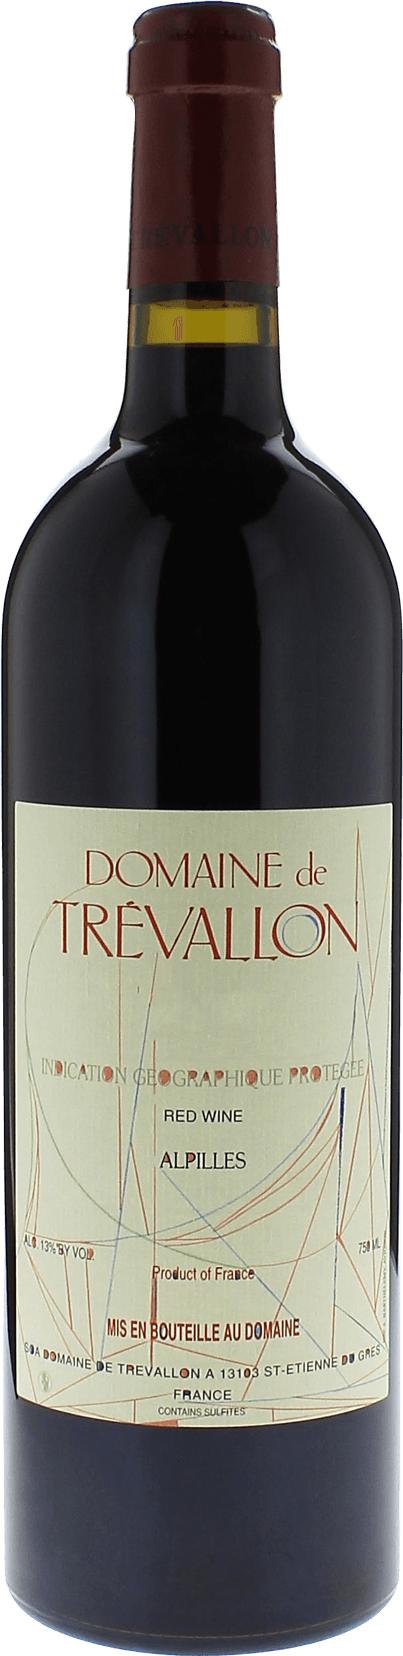 Domaine de trevallon rouge 2007  Vin de Pays, Provence